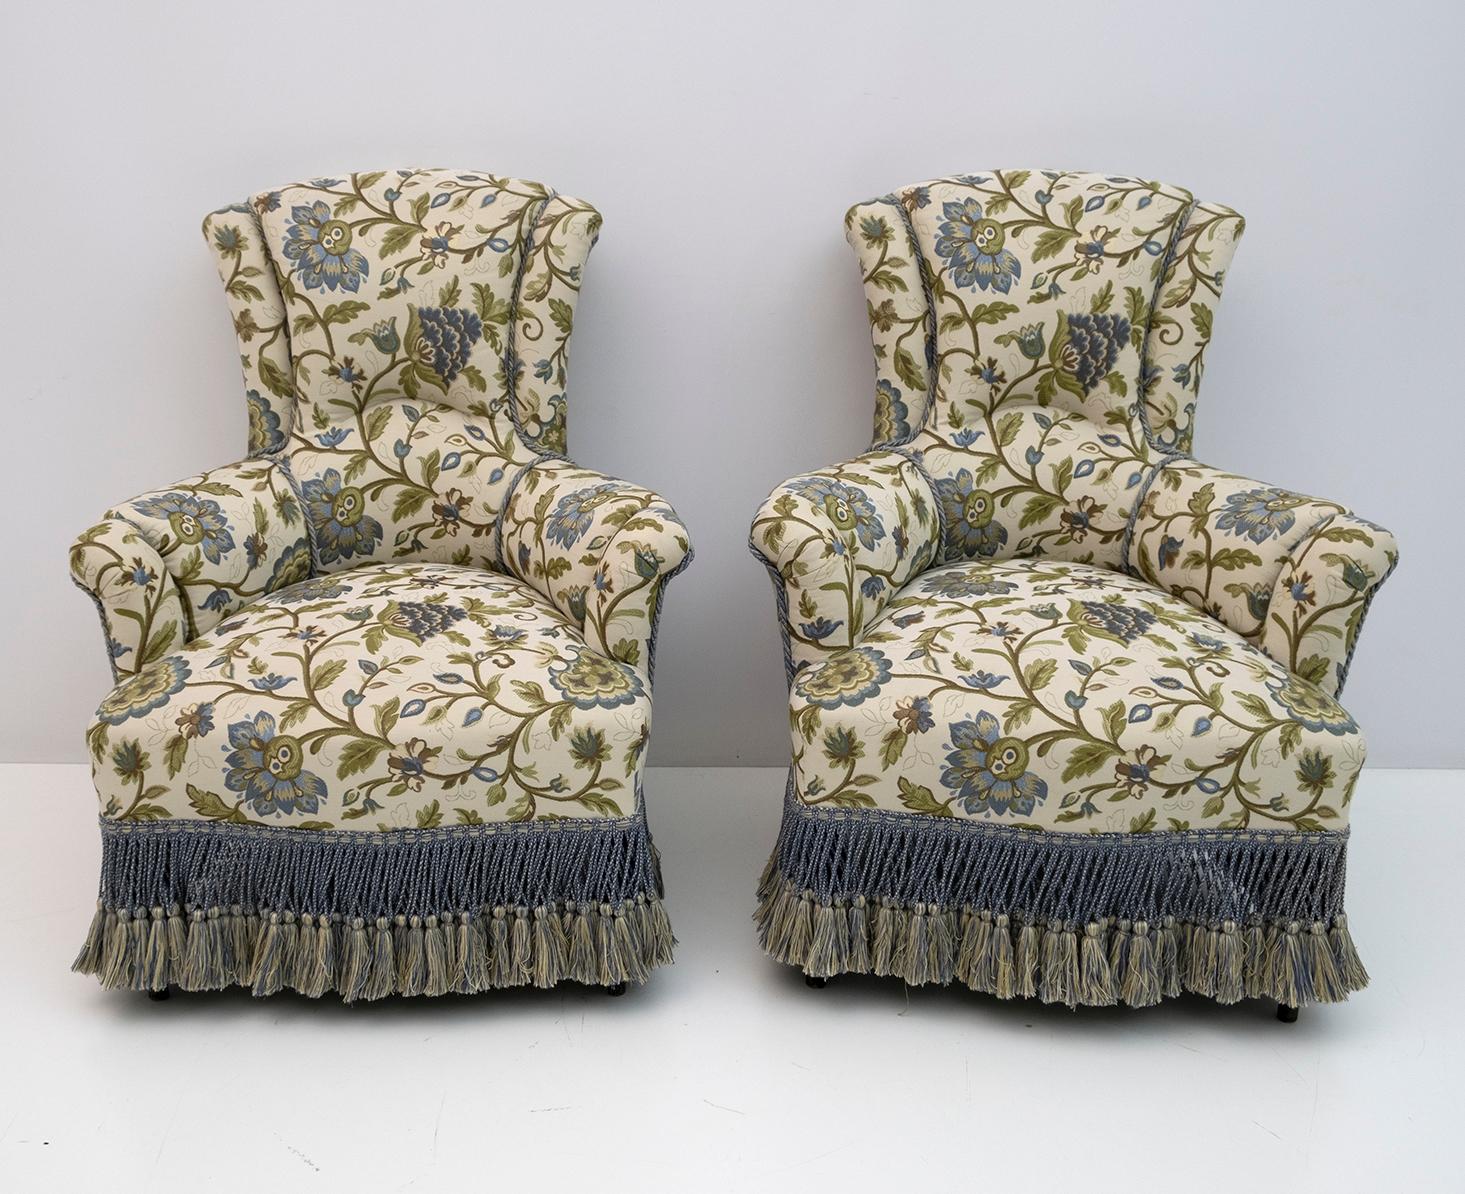 Paar Sessel aus dem 19. Jahrhundert, Periode Napoleon III. Die Sessel wurden restauriert und die Polsterung wurde durch einen schönen italienischen Brokat ersetzt. Frankreich, 1870.